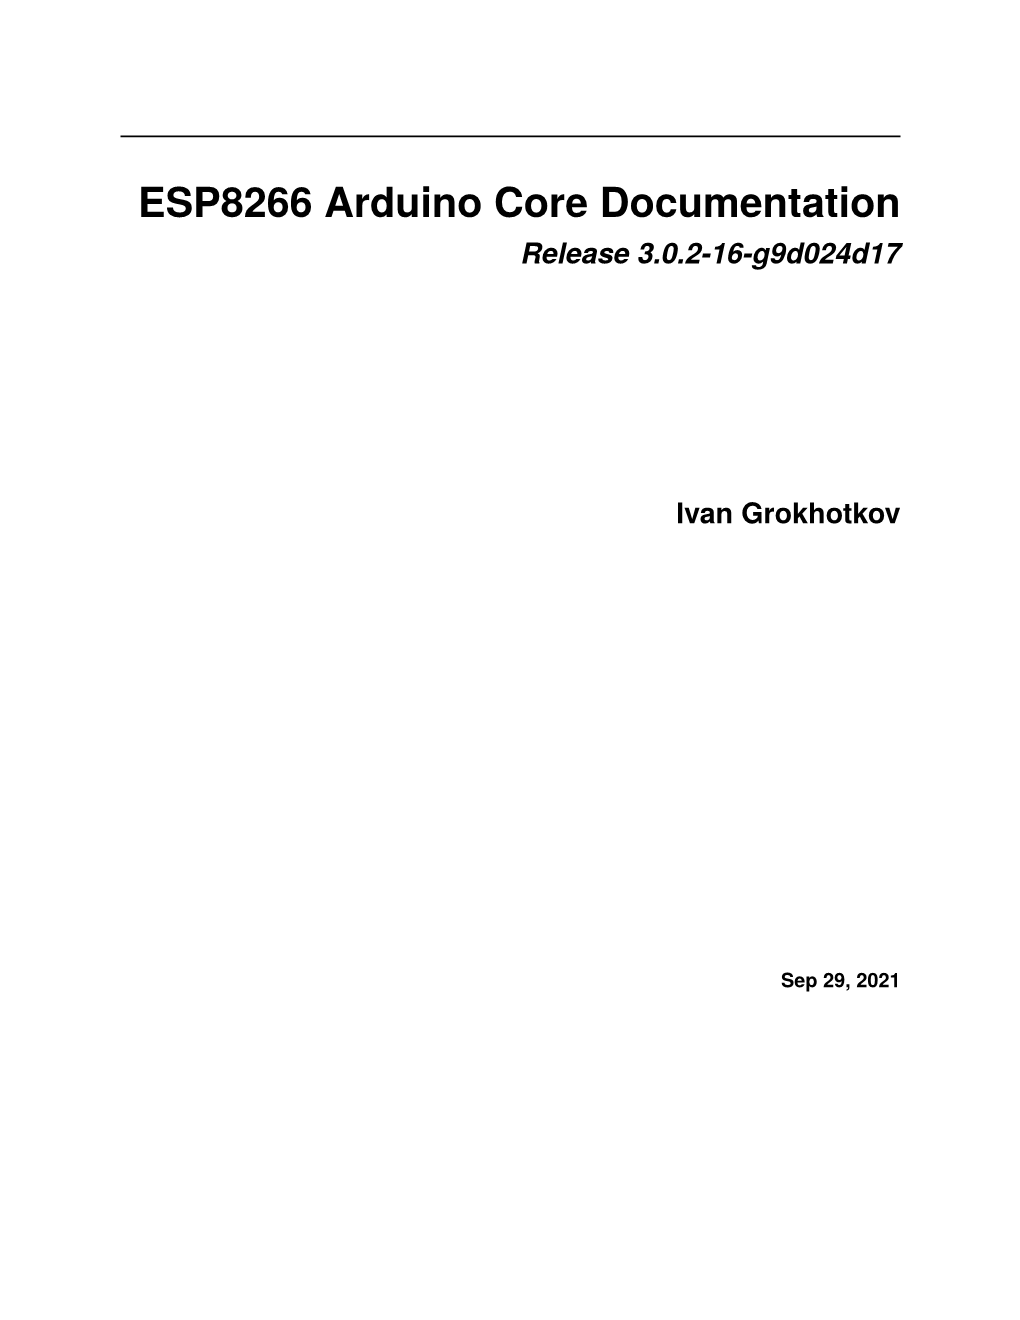 ESP8266 Arduino Core Documentation Release 3.0.2-16-G9d024d17